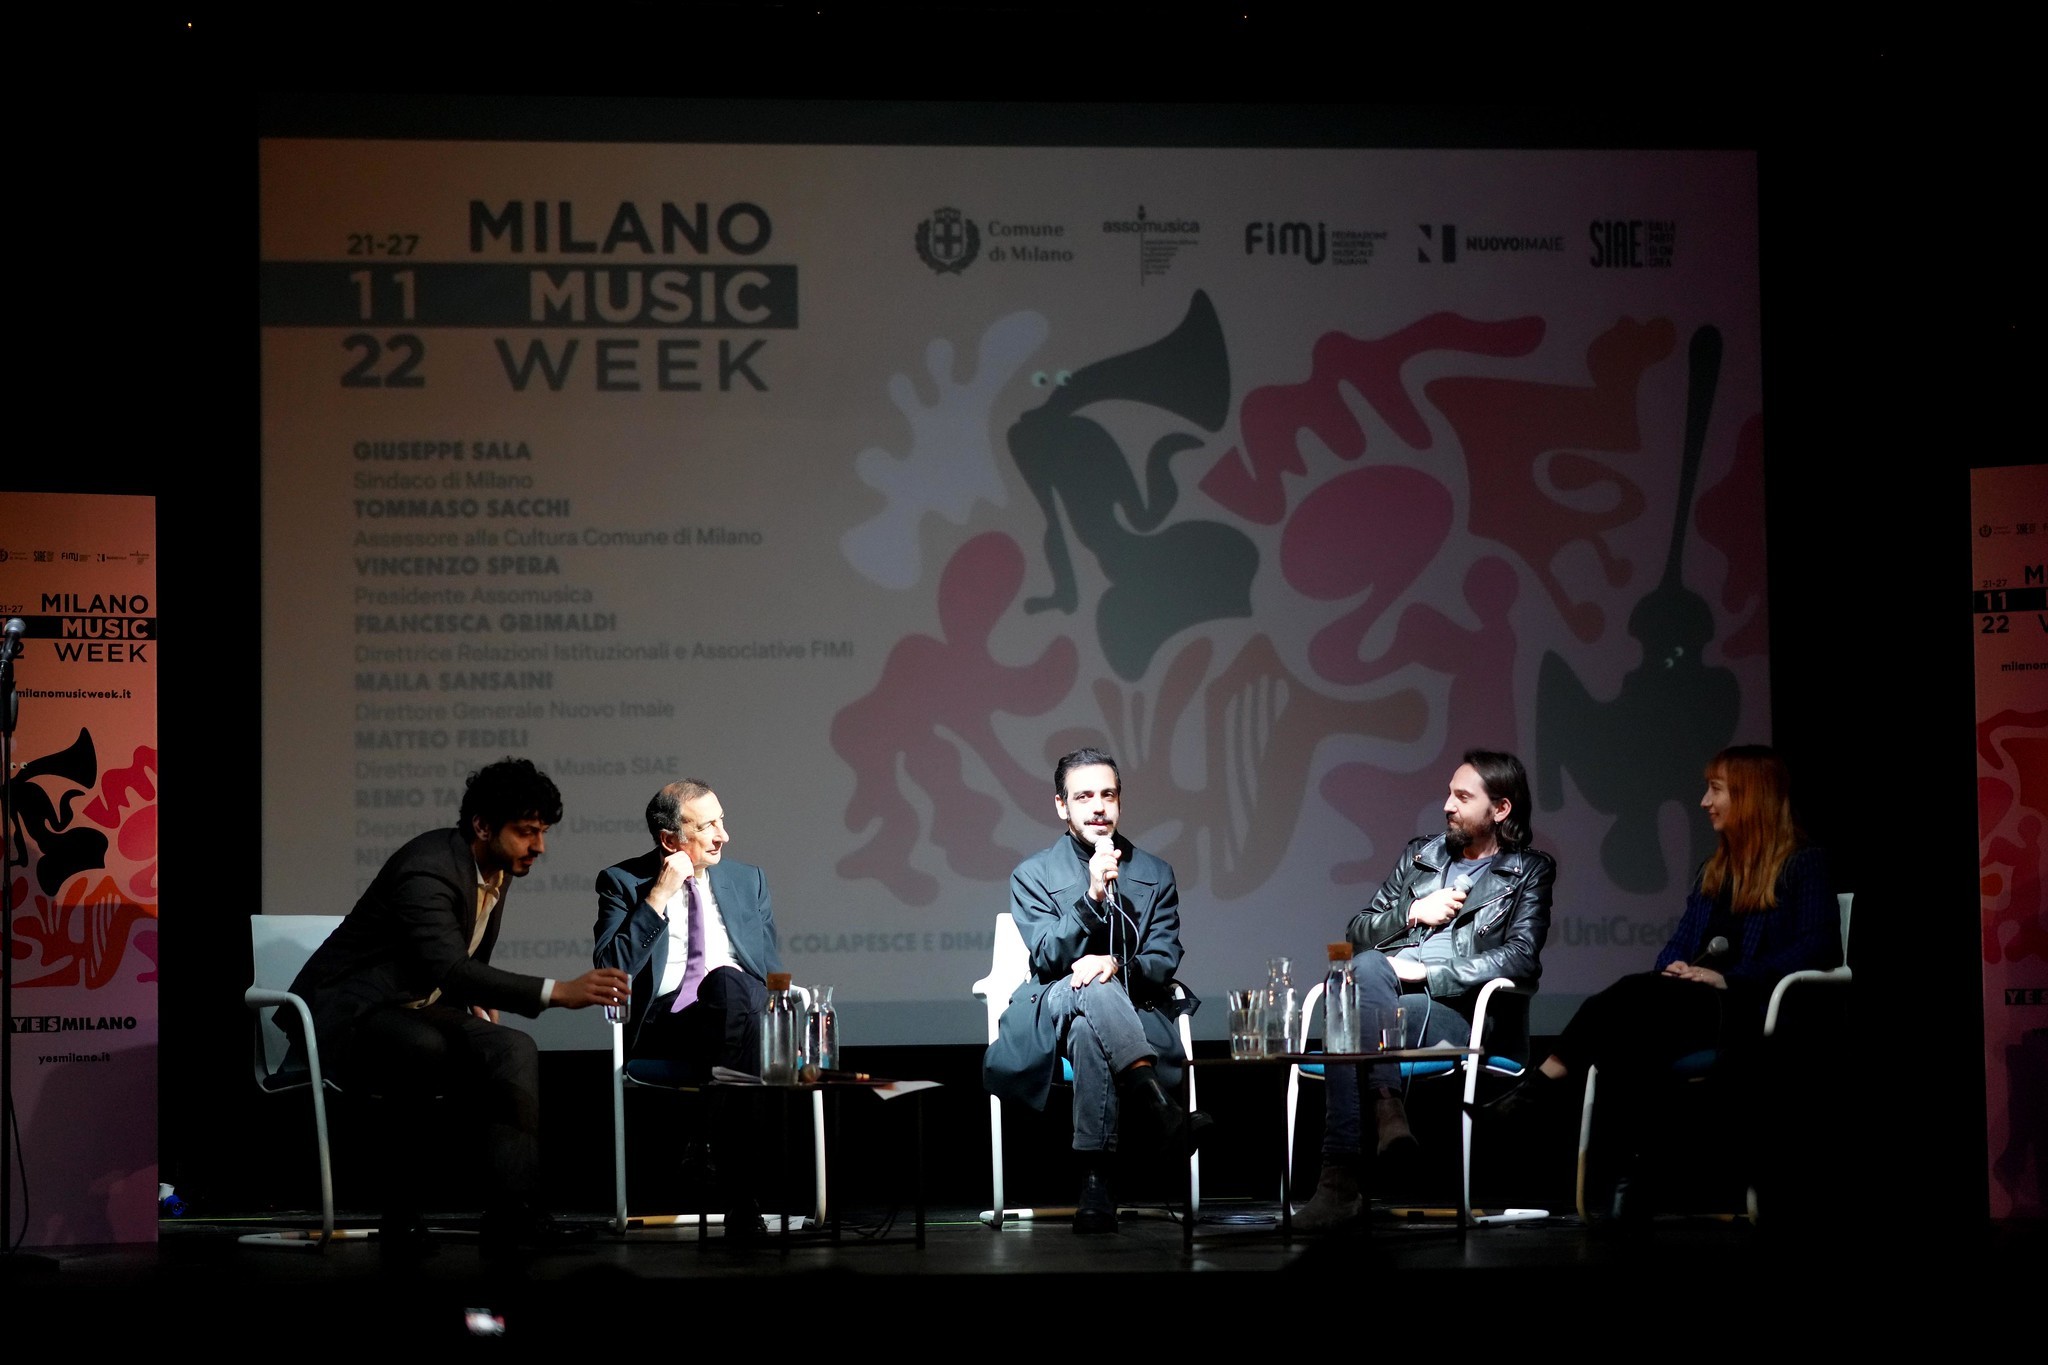 Milano Music Week, la settimana dedicata alla musica torna dal 21 al 27